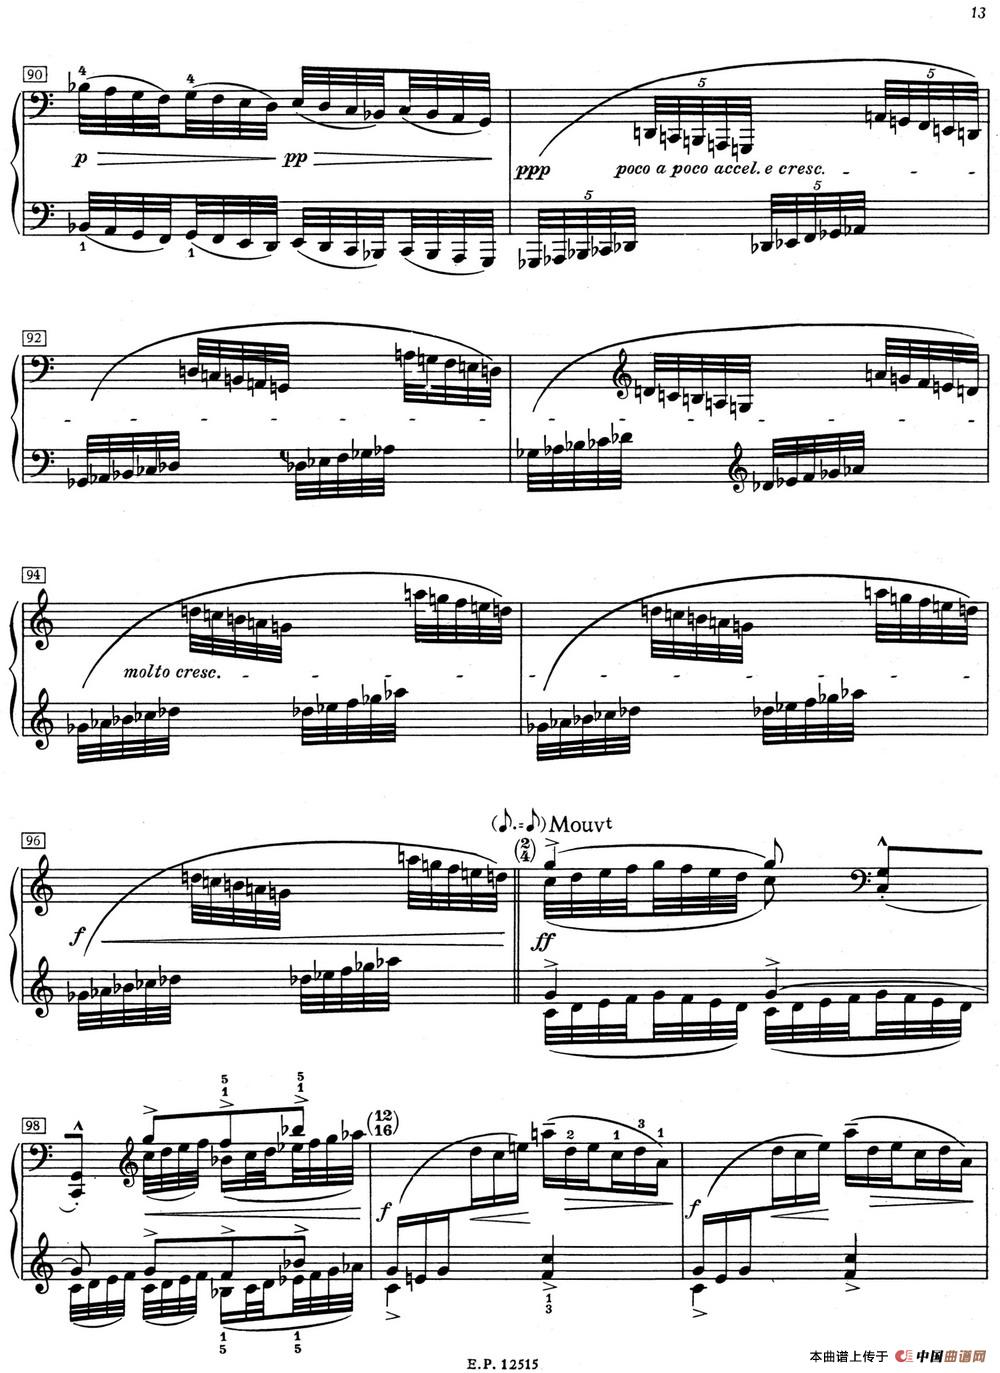 德彪西12首钢琴练习曲（1 五指练习v1.0 cinq doigts）(1)_1 Pour les cinq doigts_页面_7.jpg